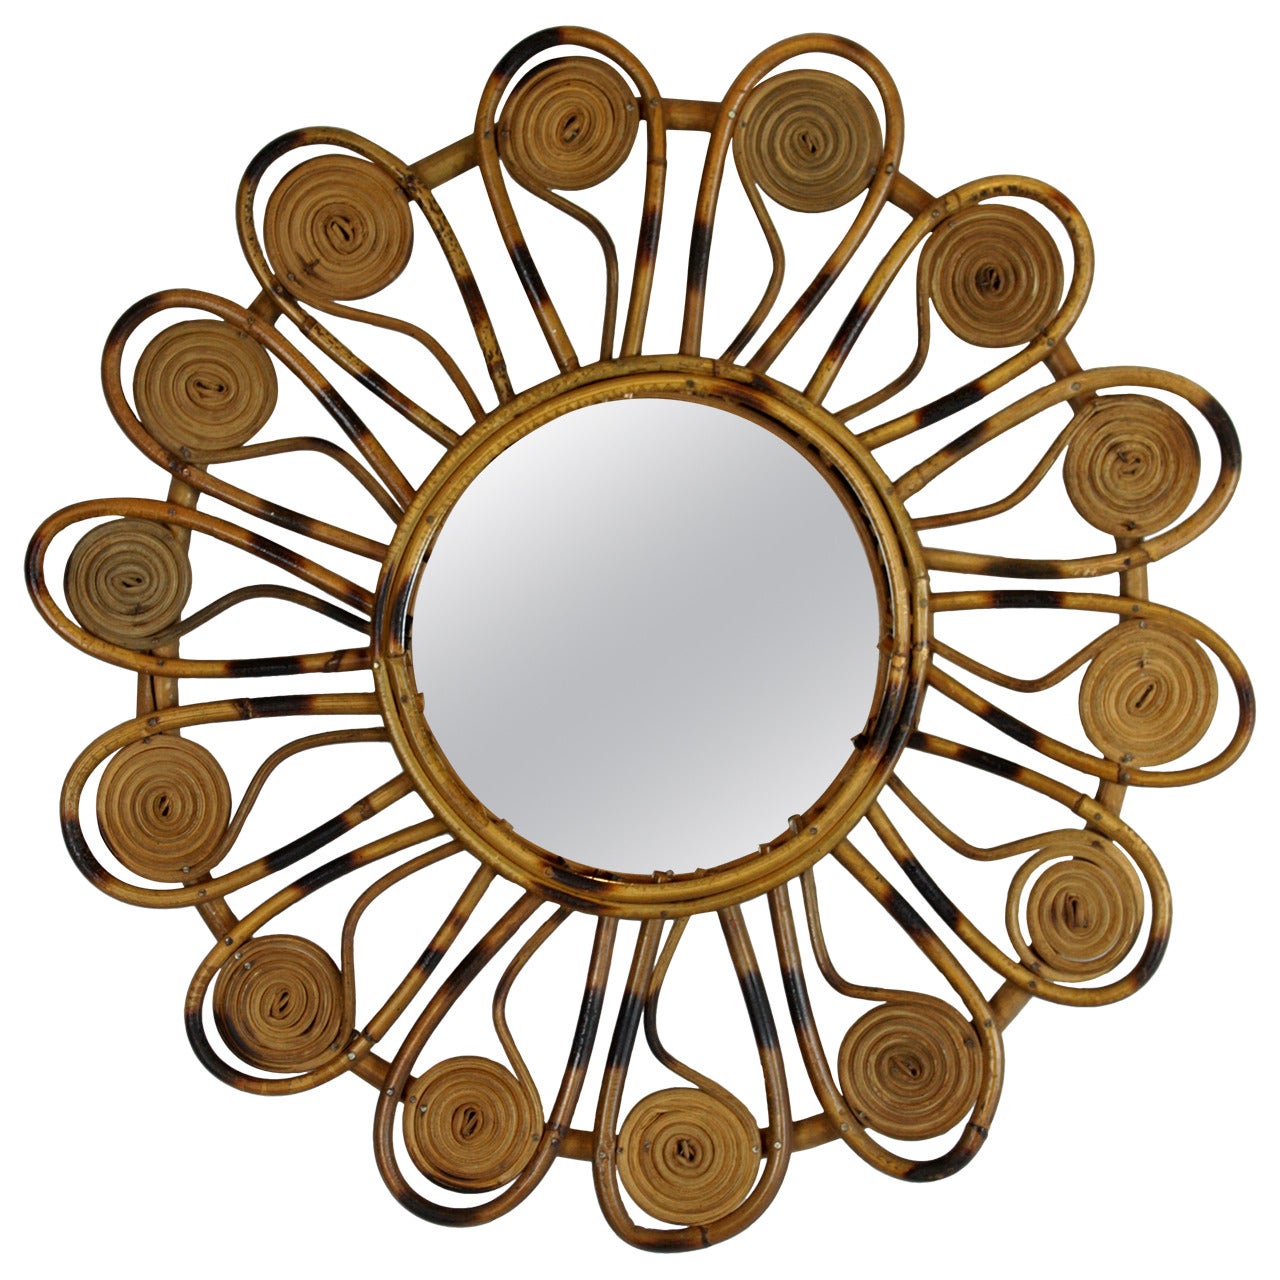 French Riviera Wicker Flower Burst Mirror with Pyro Details